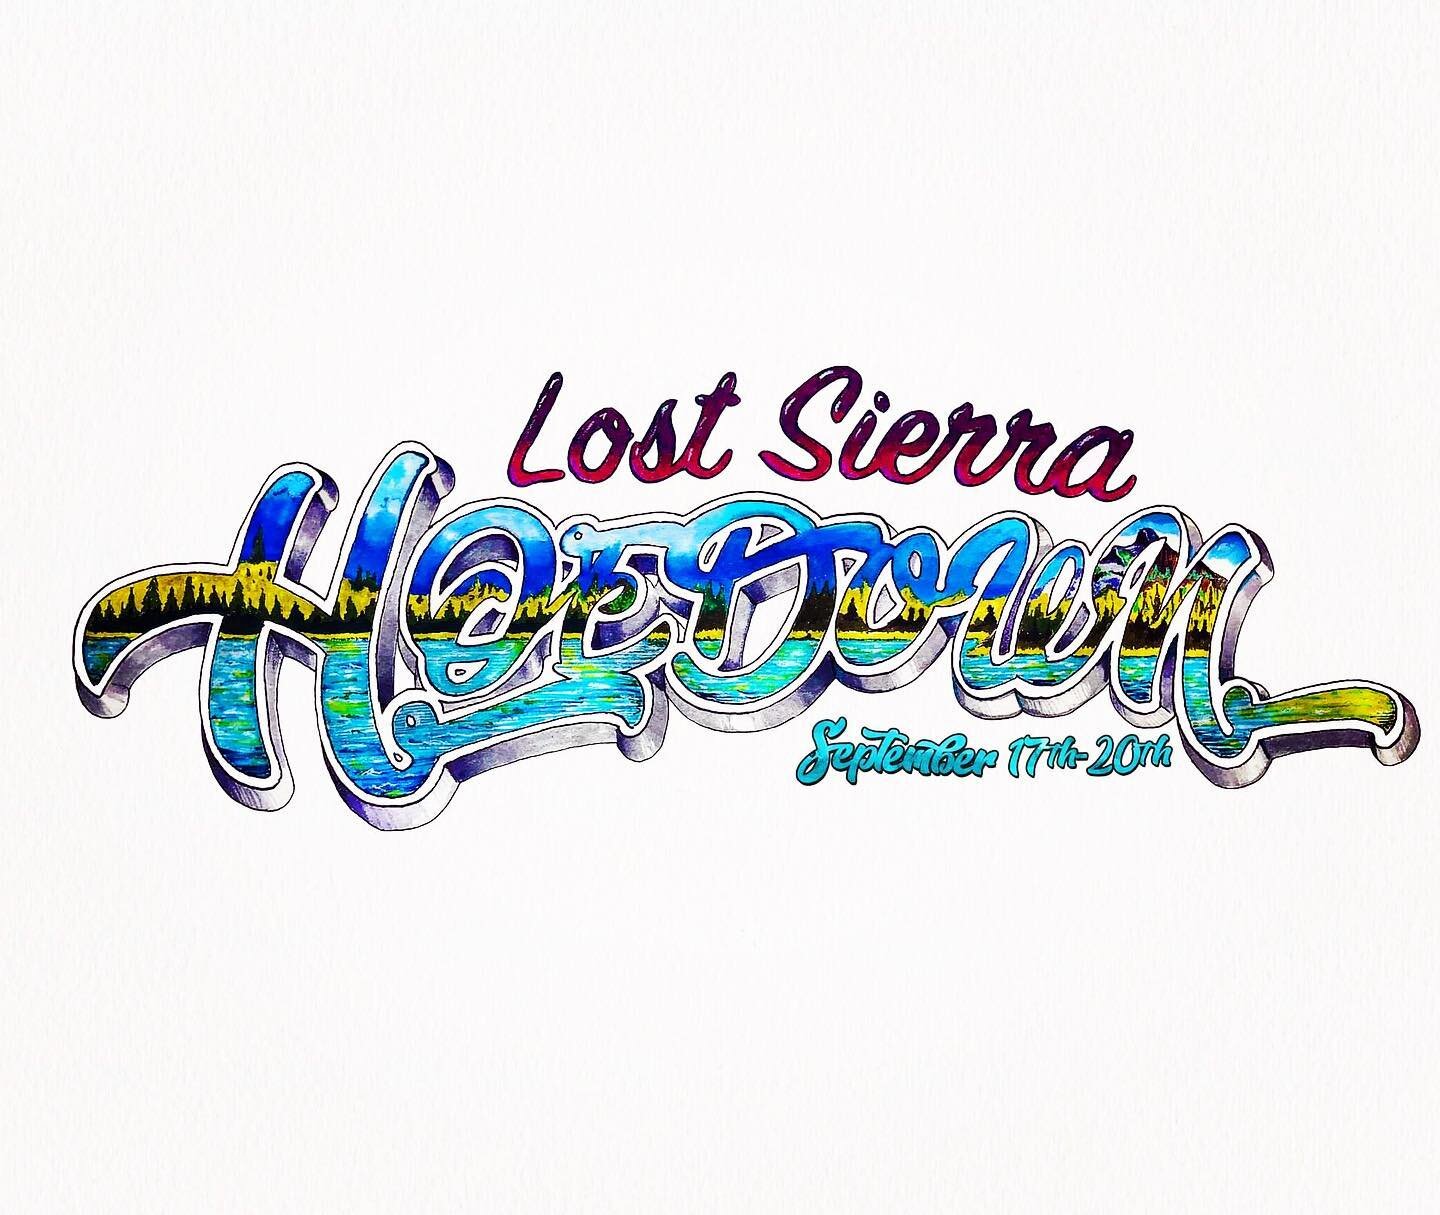 The 8th annual Lost Sierra Hoedown! September 17-20, 2020  #2020vision #lostsierrahoedown